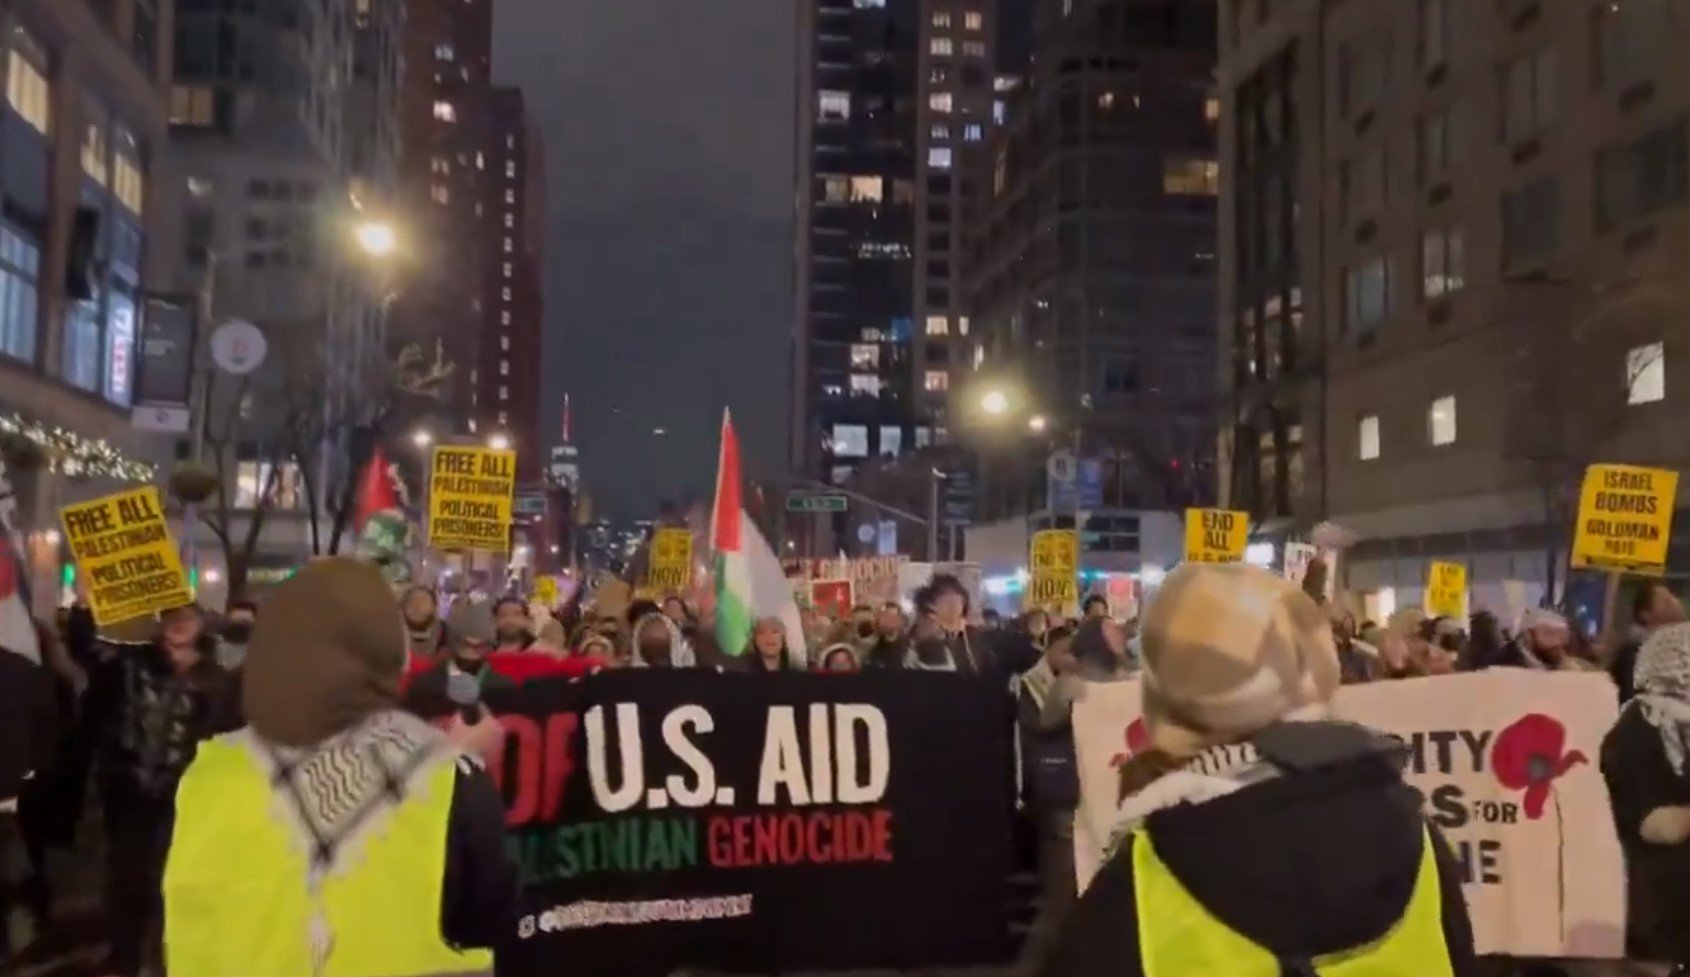 Gran marcha de protesta a favor de Hamas avanza hacia Times Square para arruinar el Año Nuevo para millones de estadounidenses | The Gateway Pundit